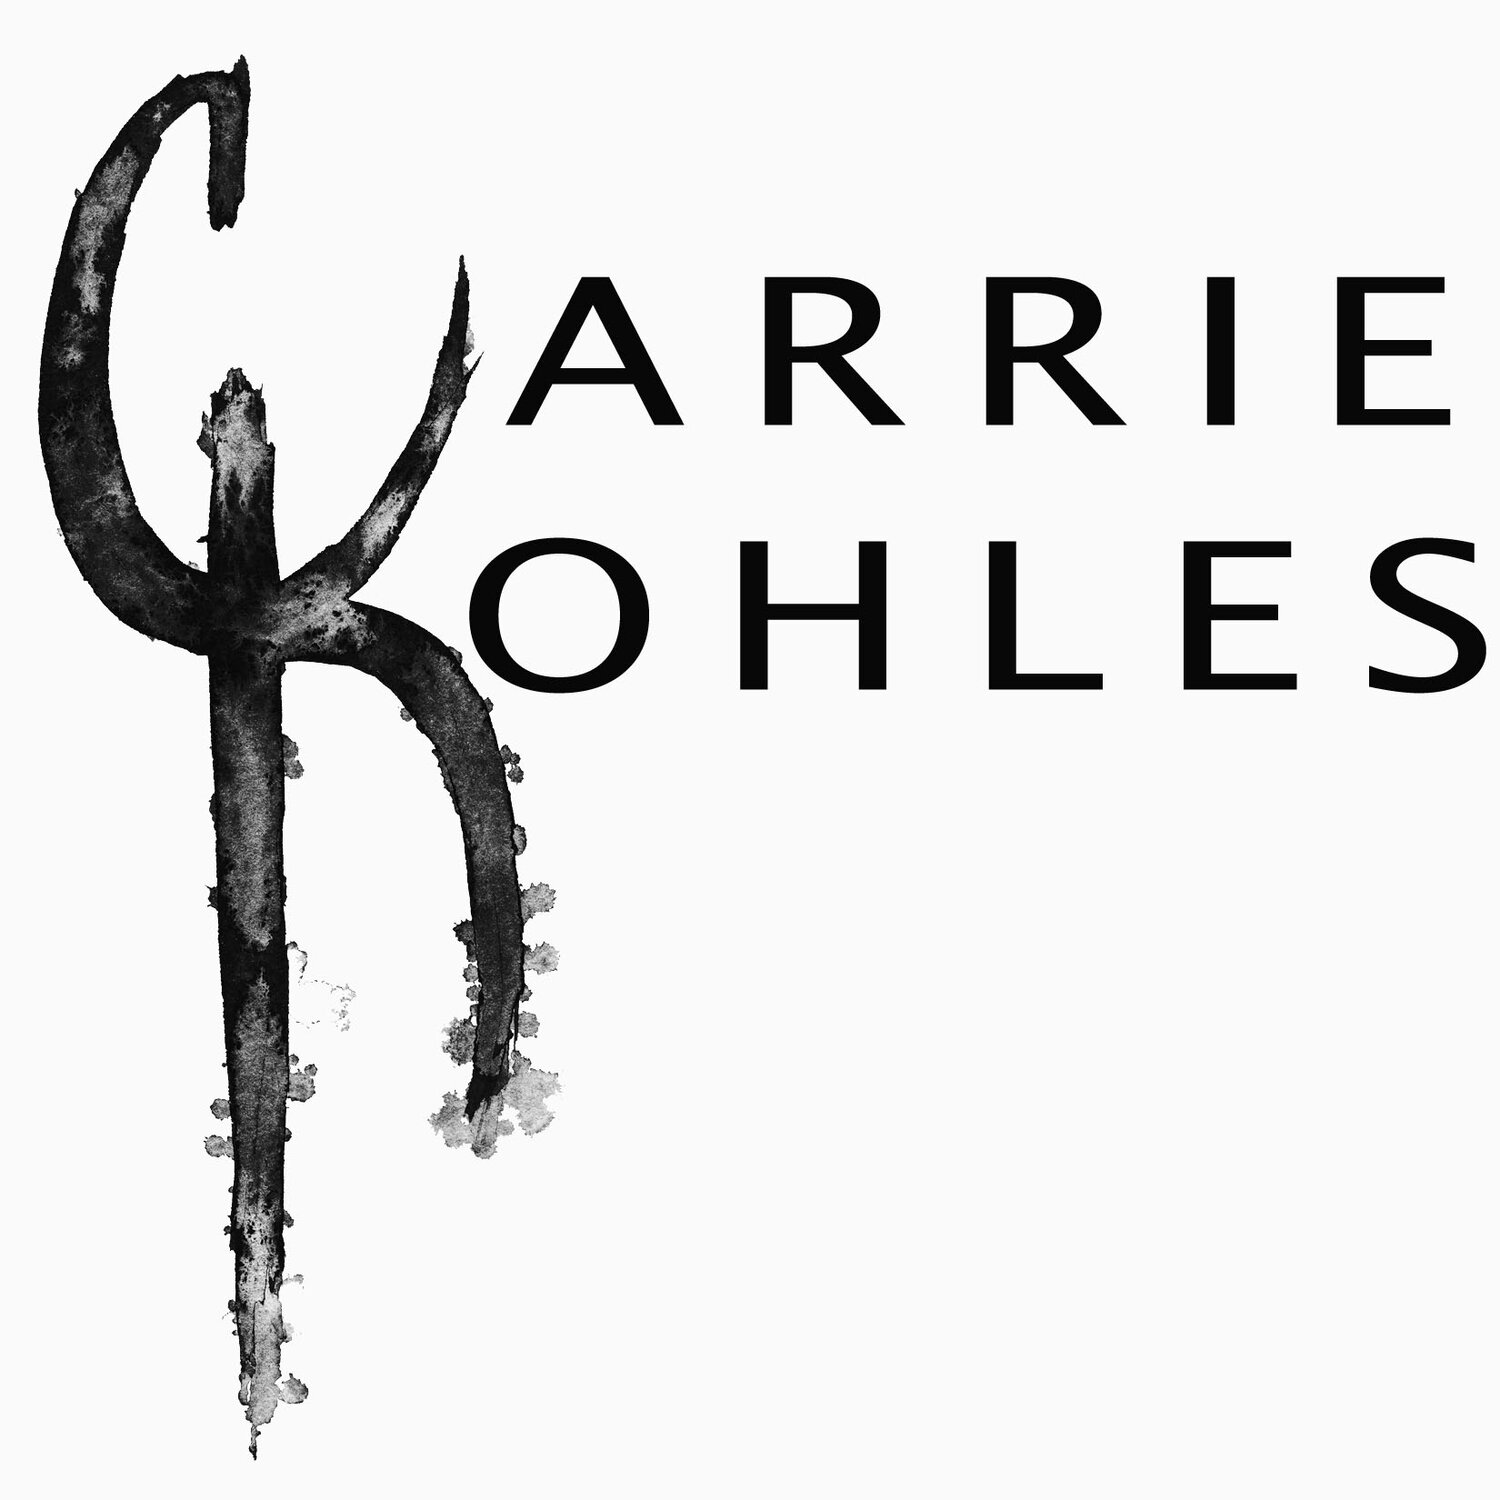 CARRIE KOHLES